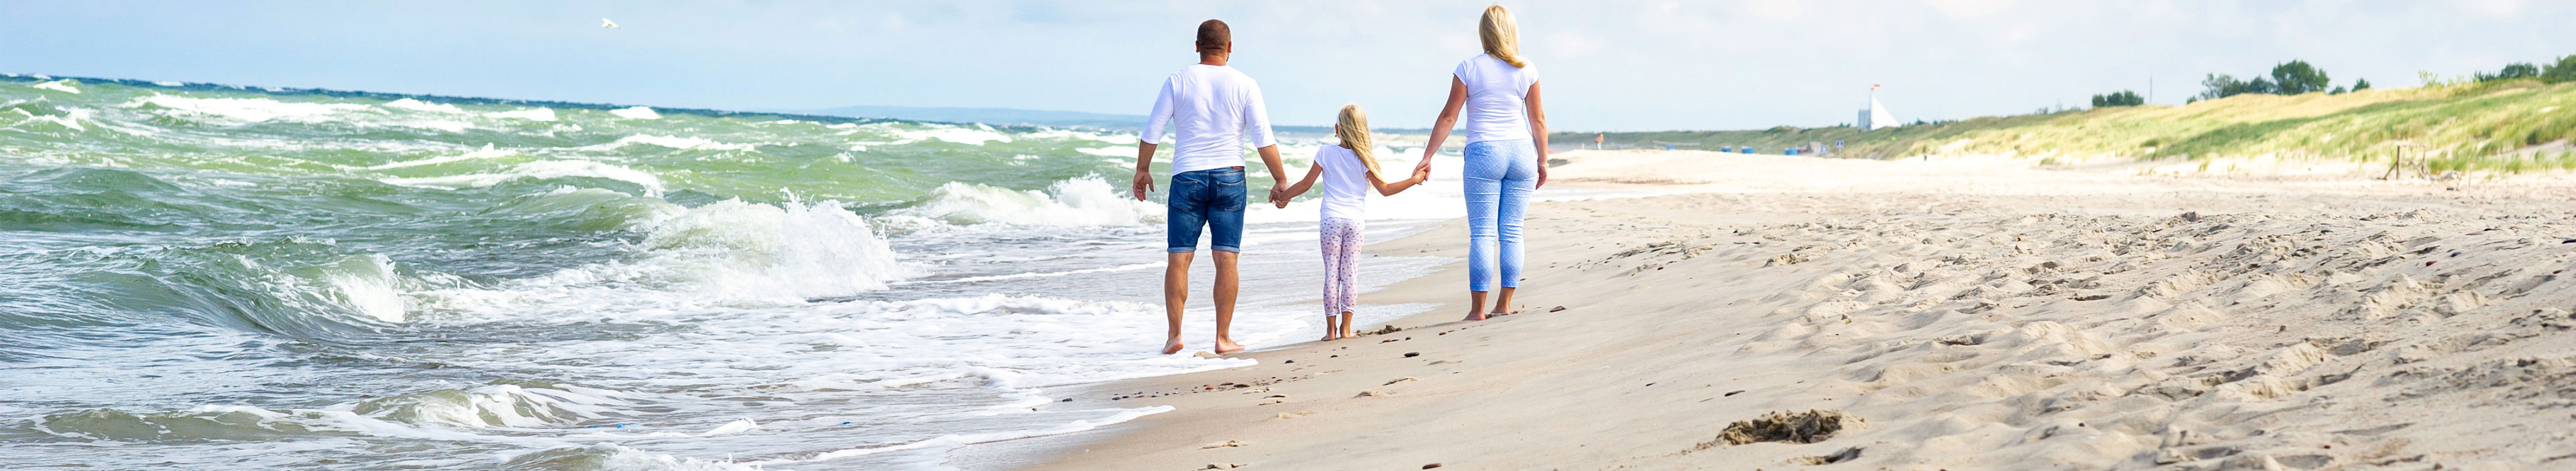 Ein kleines Mädchen und seine Eltern spazieren am Strand der Ostsee